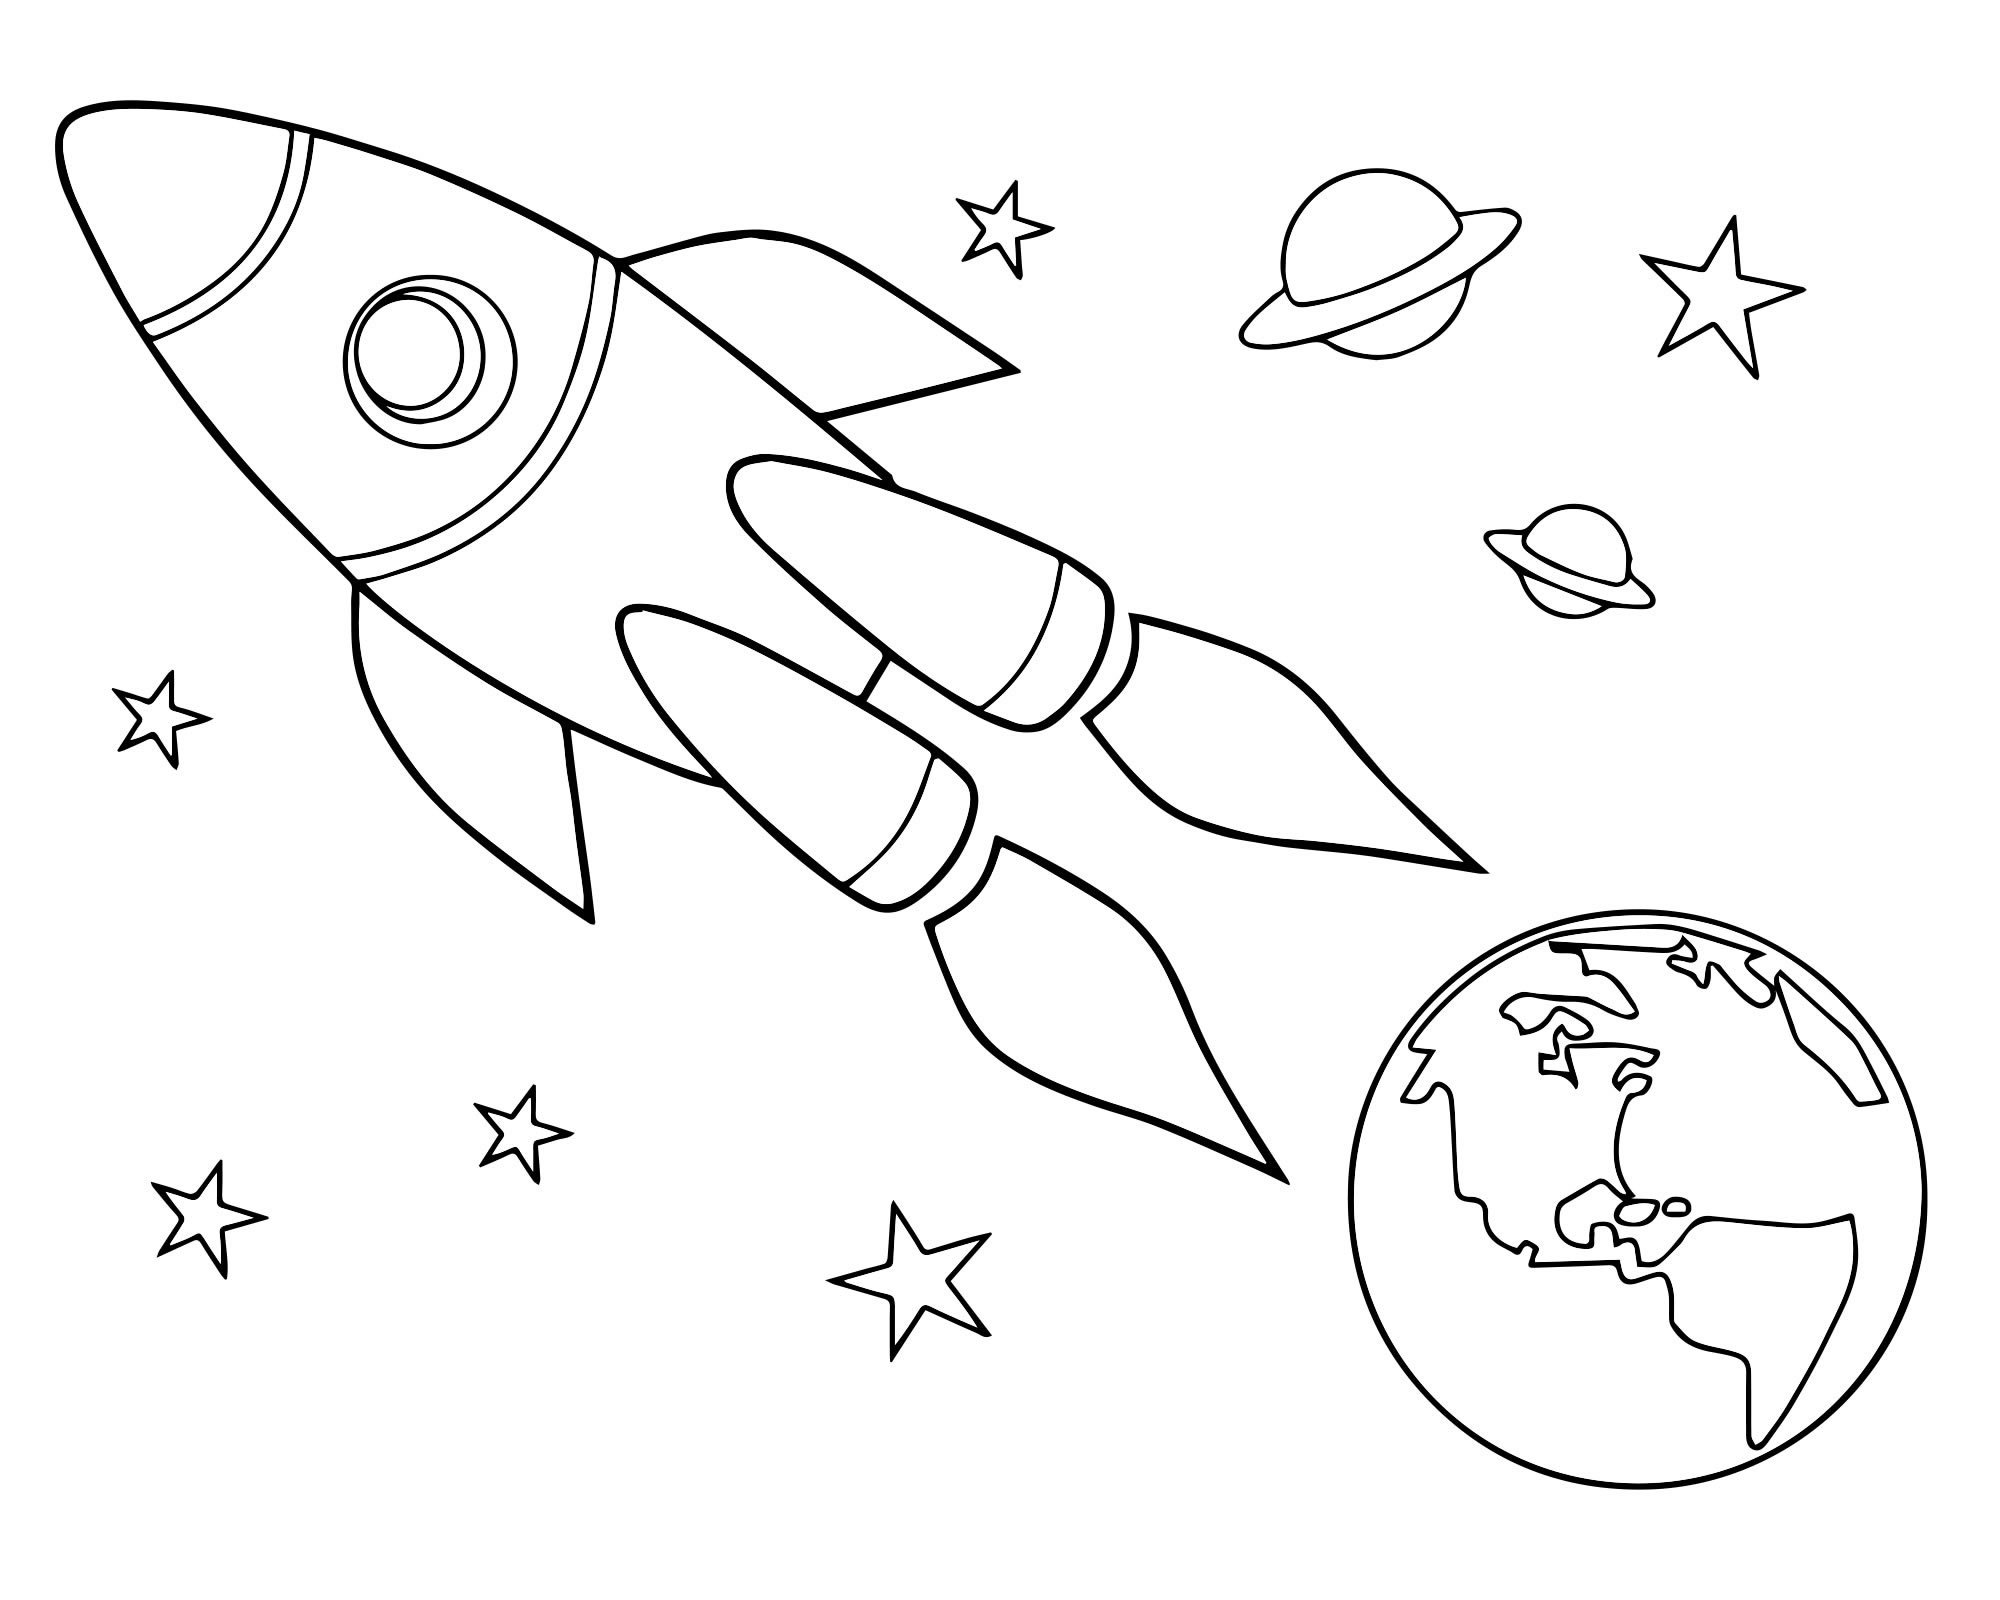 Картинки ко дню космонавтики для детского сада. Космос раскраска для детей. Раскраска день космонавтики для детей. Трафареты на тему космоса для детей. Раскраска для малышей. Космос.